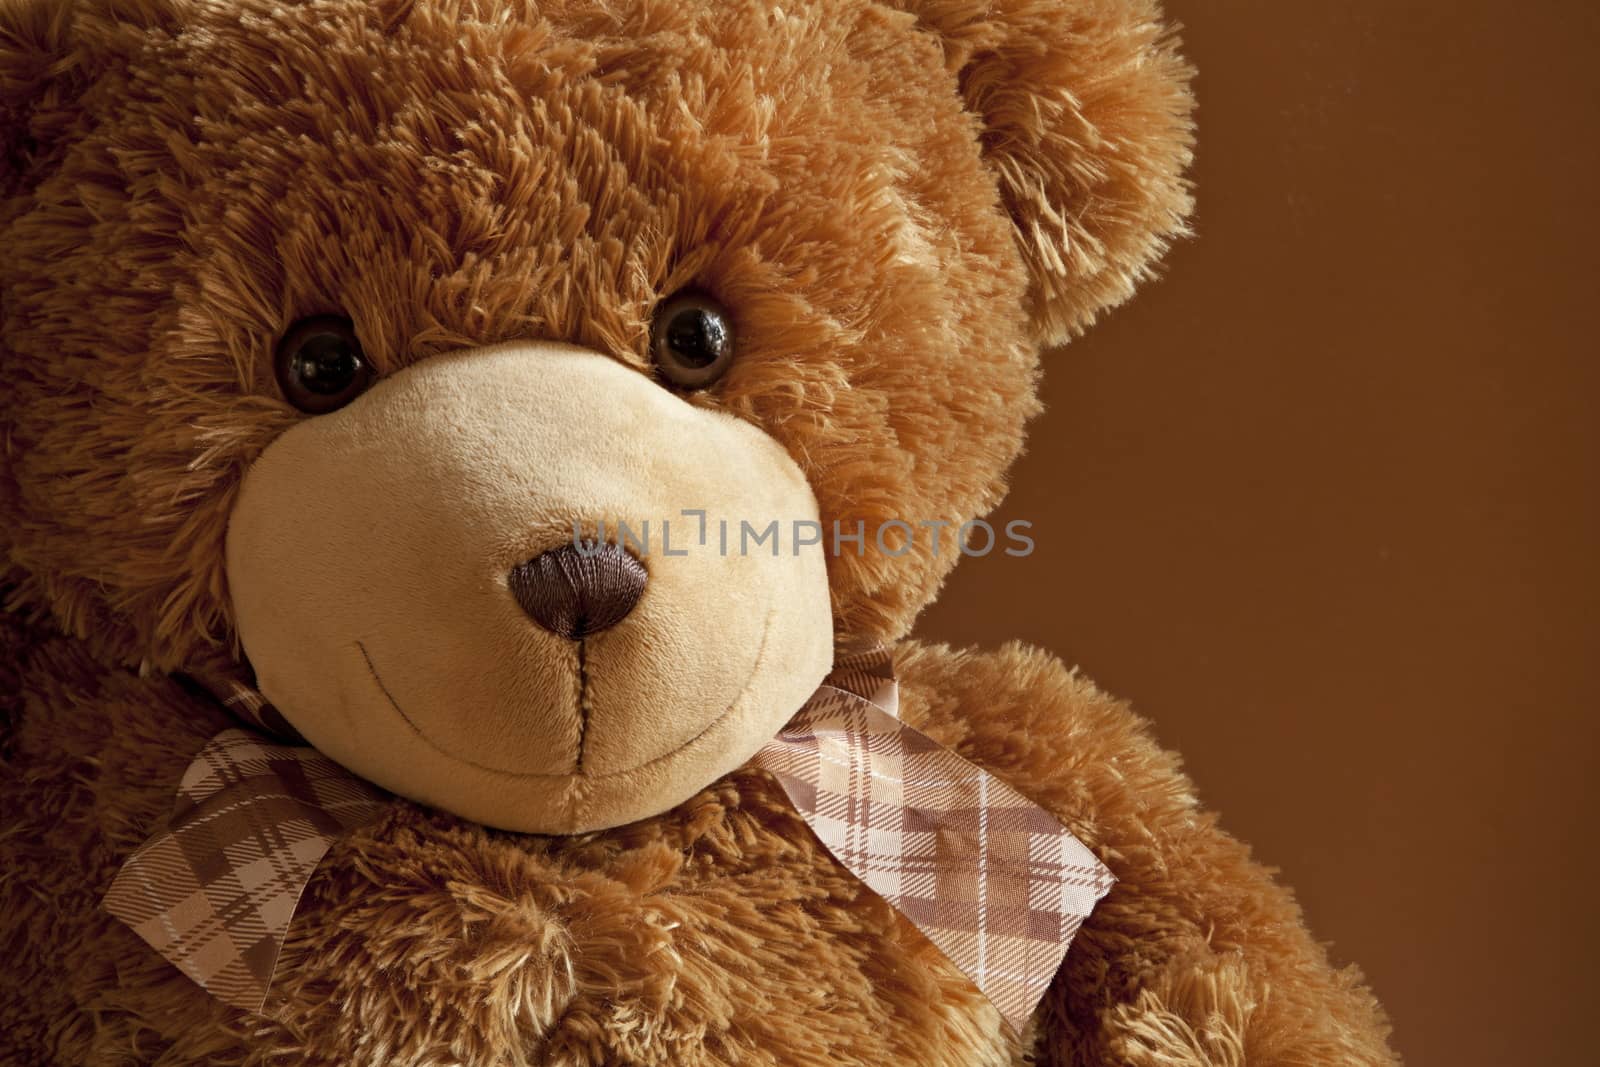 Kind friend plush teddy bear by mrivserg